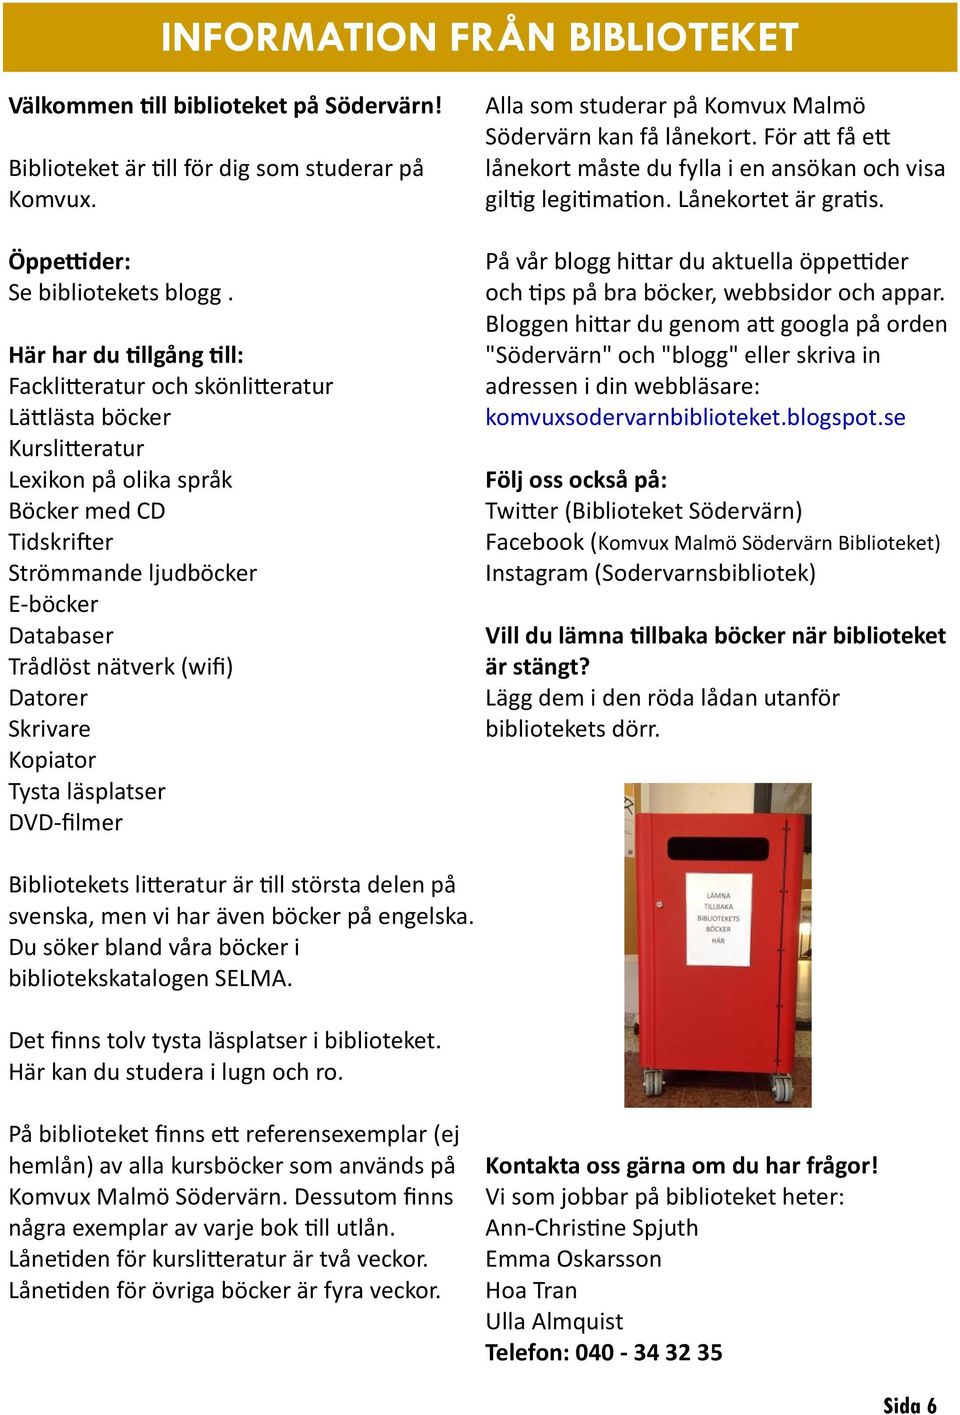 (wifi) Datorer Skrivare Kopiator Tysta läsplatser DVD-filmer Alla som studerar på Komvux Malmö Södervärn kan få lånekort.